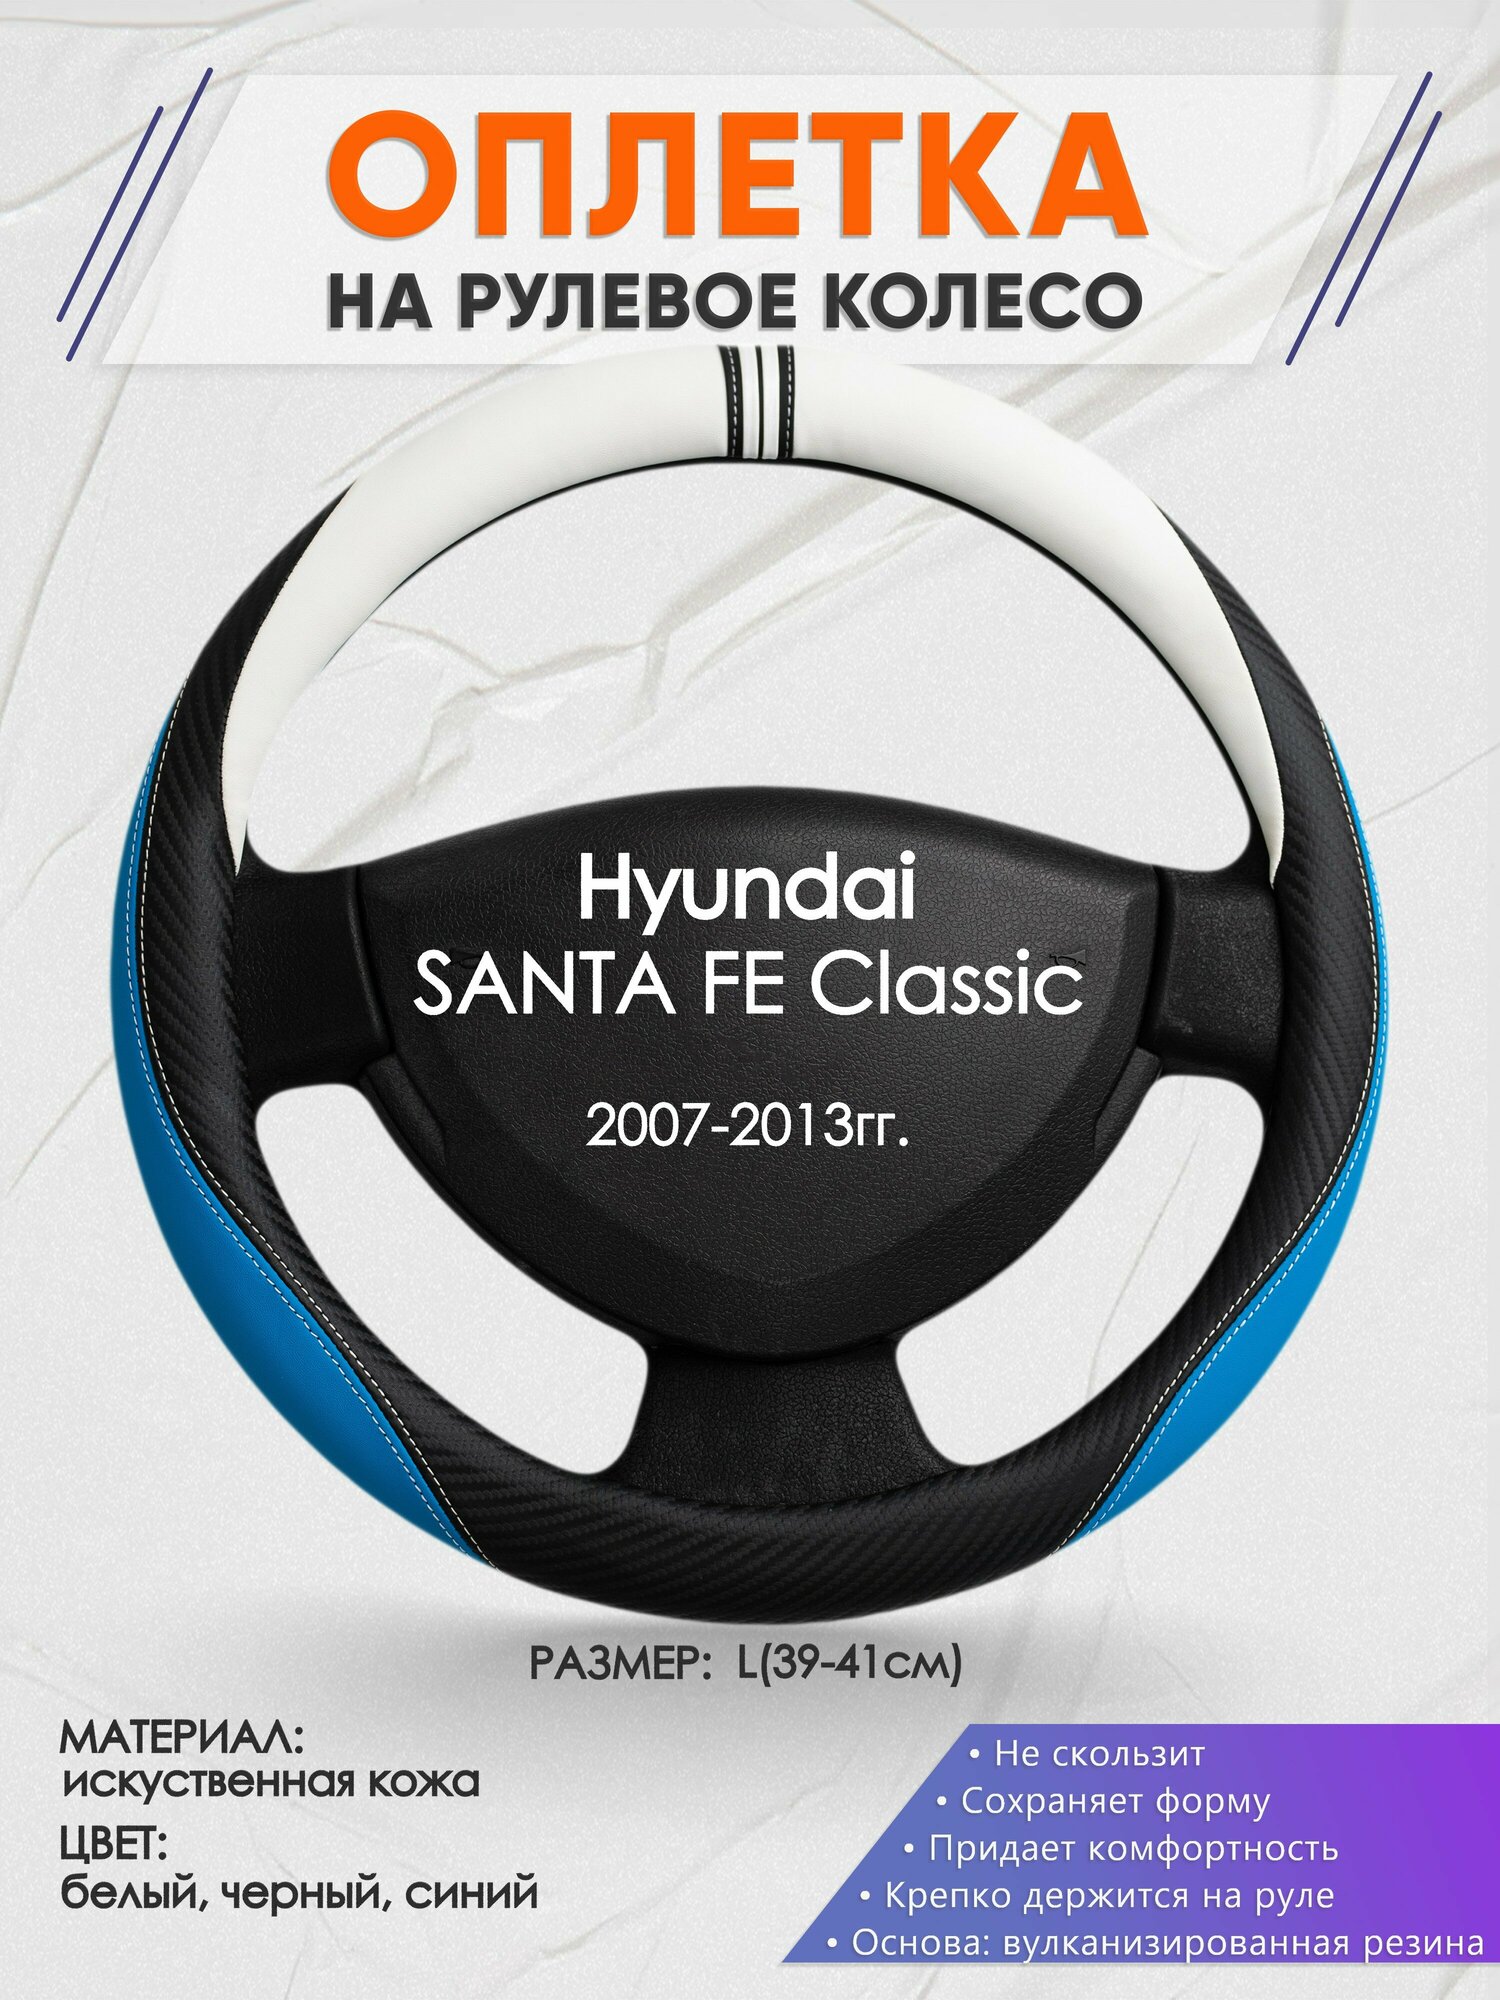 Оплетка на руль для Hyundai SANTA FE Classic(Хендай Санта фе) 2007-2013, L(39-41см), Искусственная кожа 03